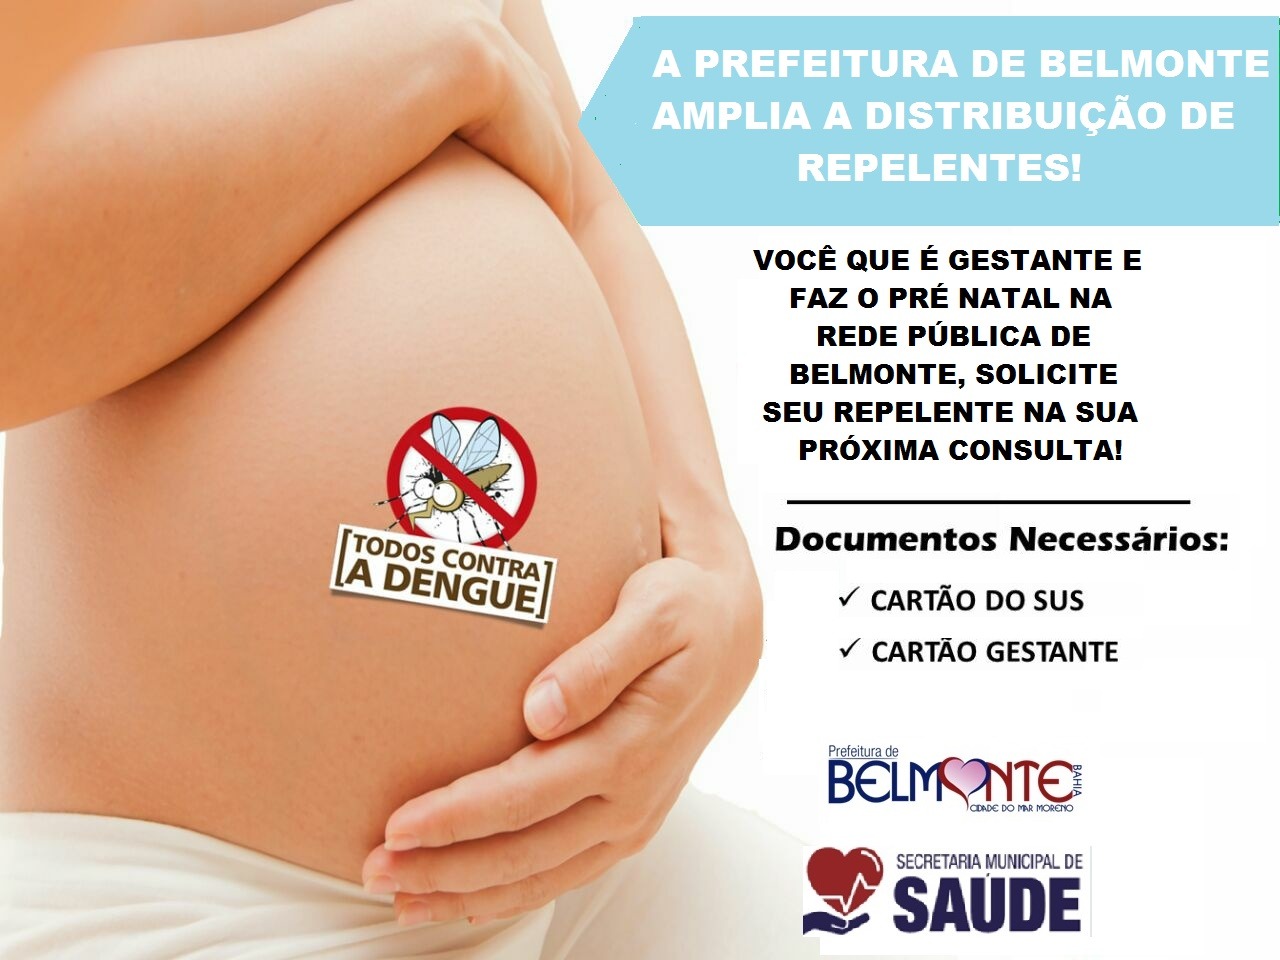 Belmonte disponibiliza repelentes para todas as grávidas atendidas pela Rede Municipal de Saúde.